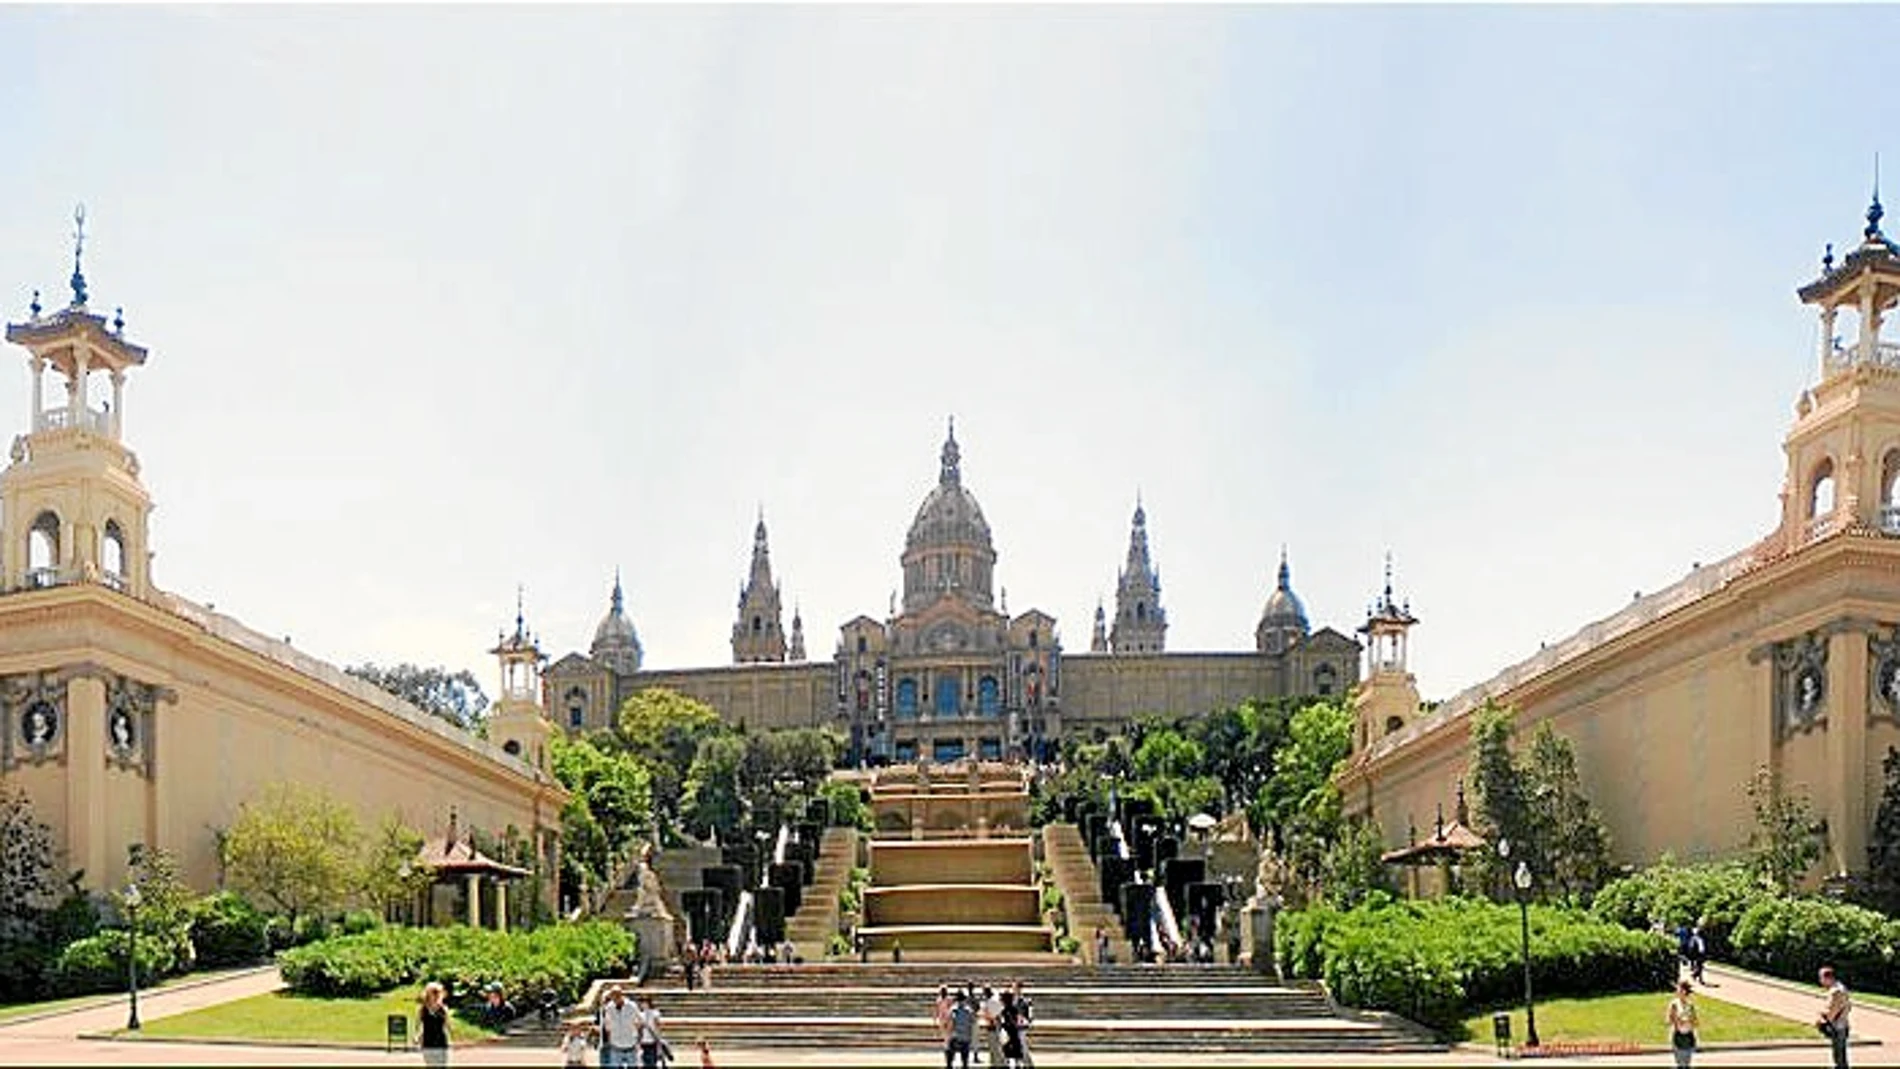 A los lados, el Palacio Victoria Eugenia que en la temporada 2018/19 volverá a acoger exposiciones.